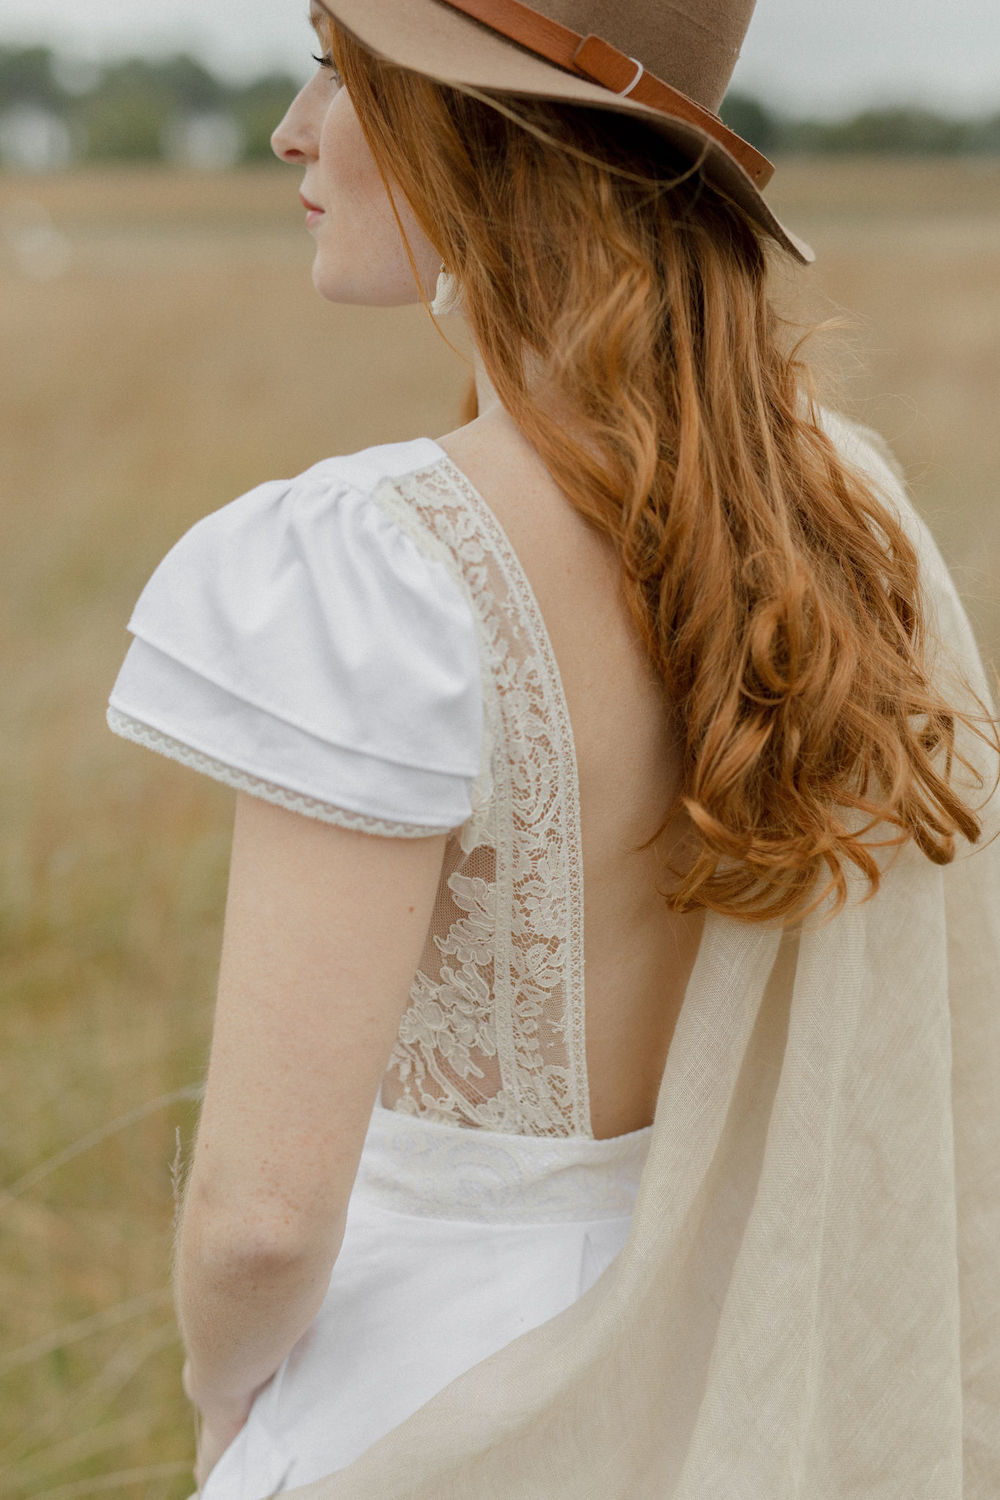 Louise Valentine Collection 2019 - Robes de mariée - Blog Mariage Madame C